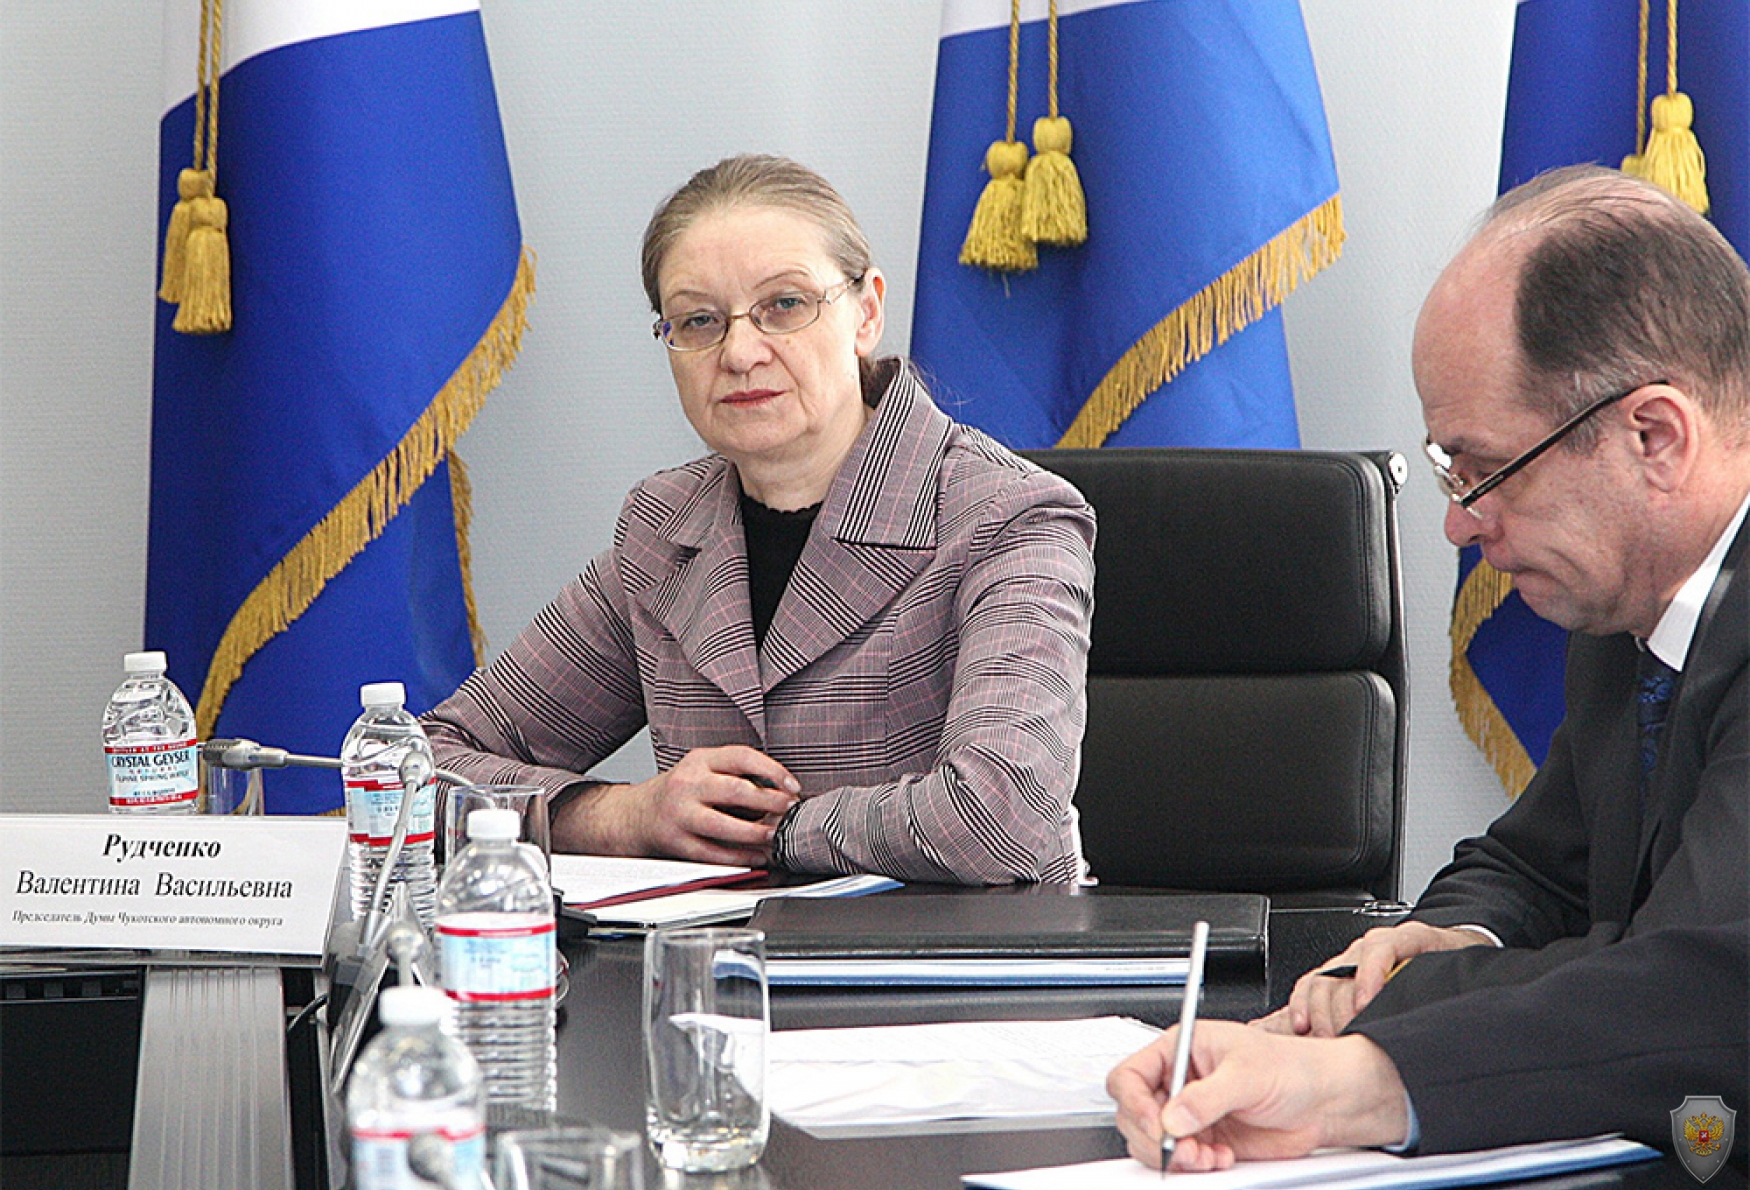 Обсуждение представленных в повестке вопросов заседания Антитеррористической комиссии в Чукотском автономном округе